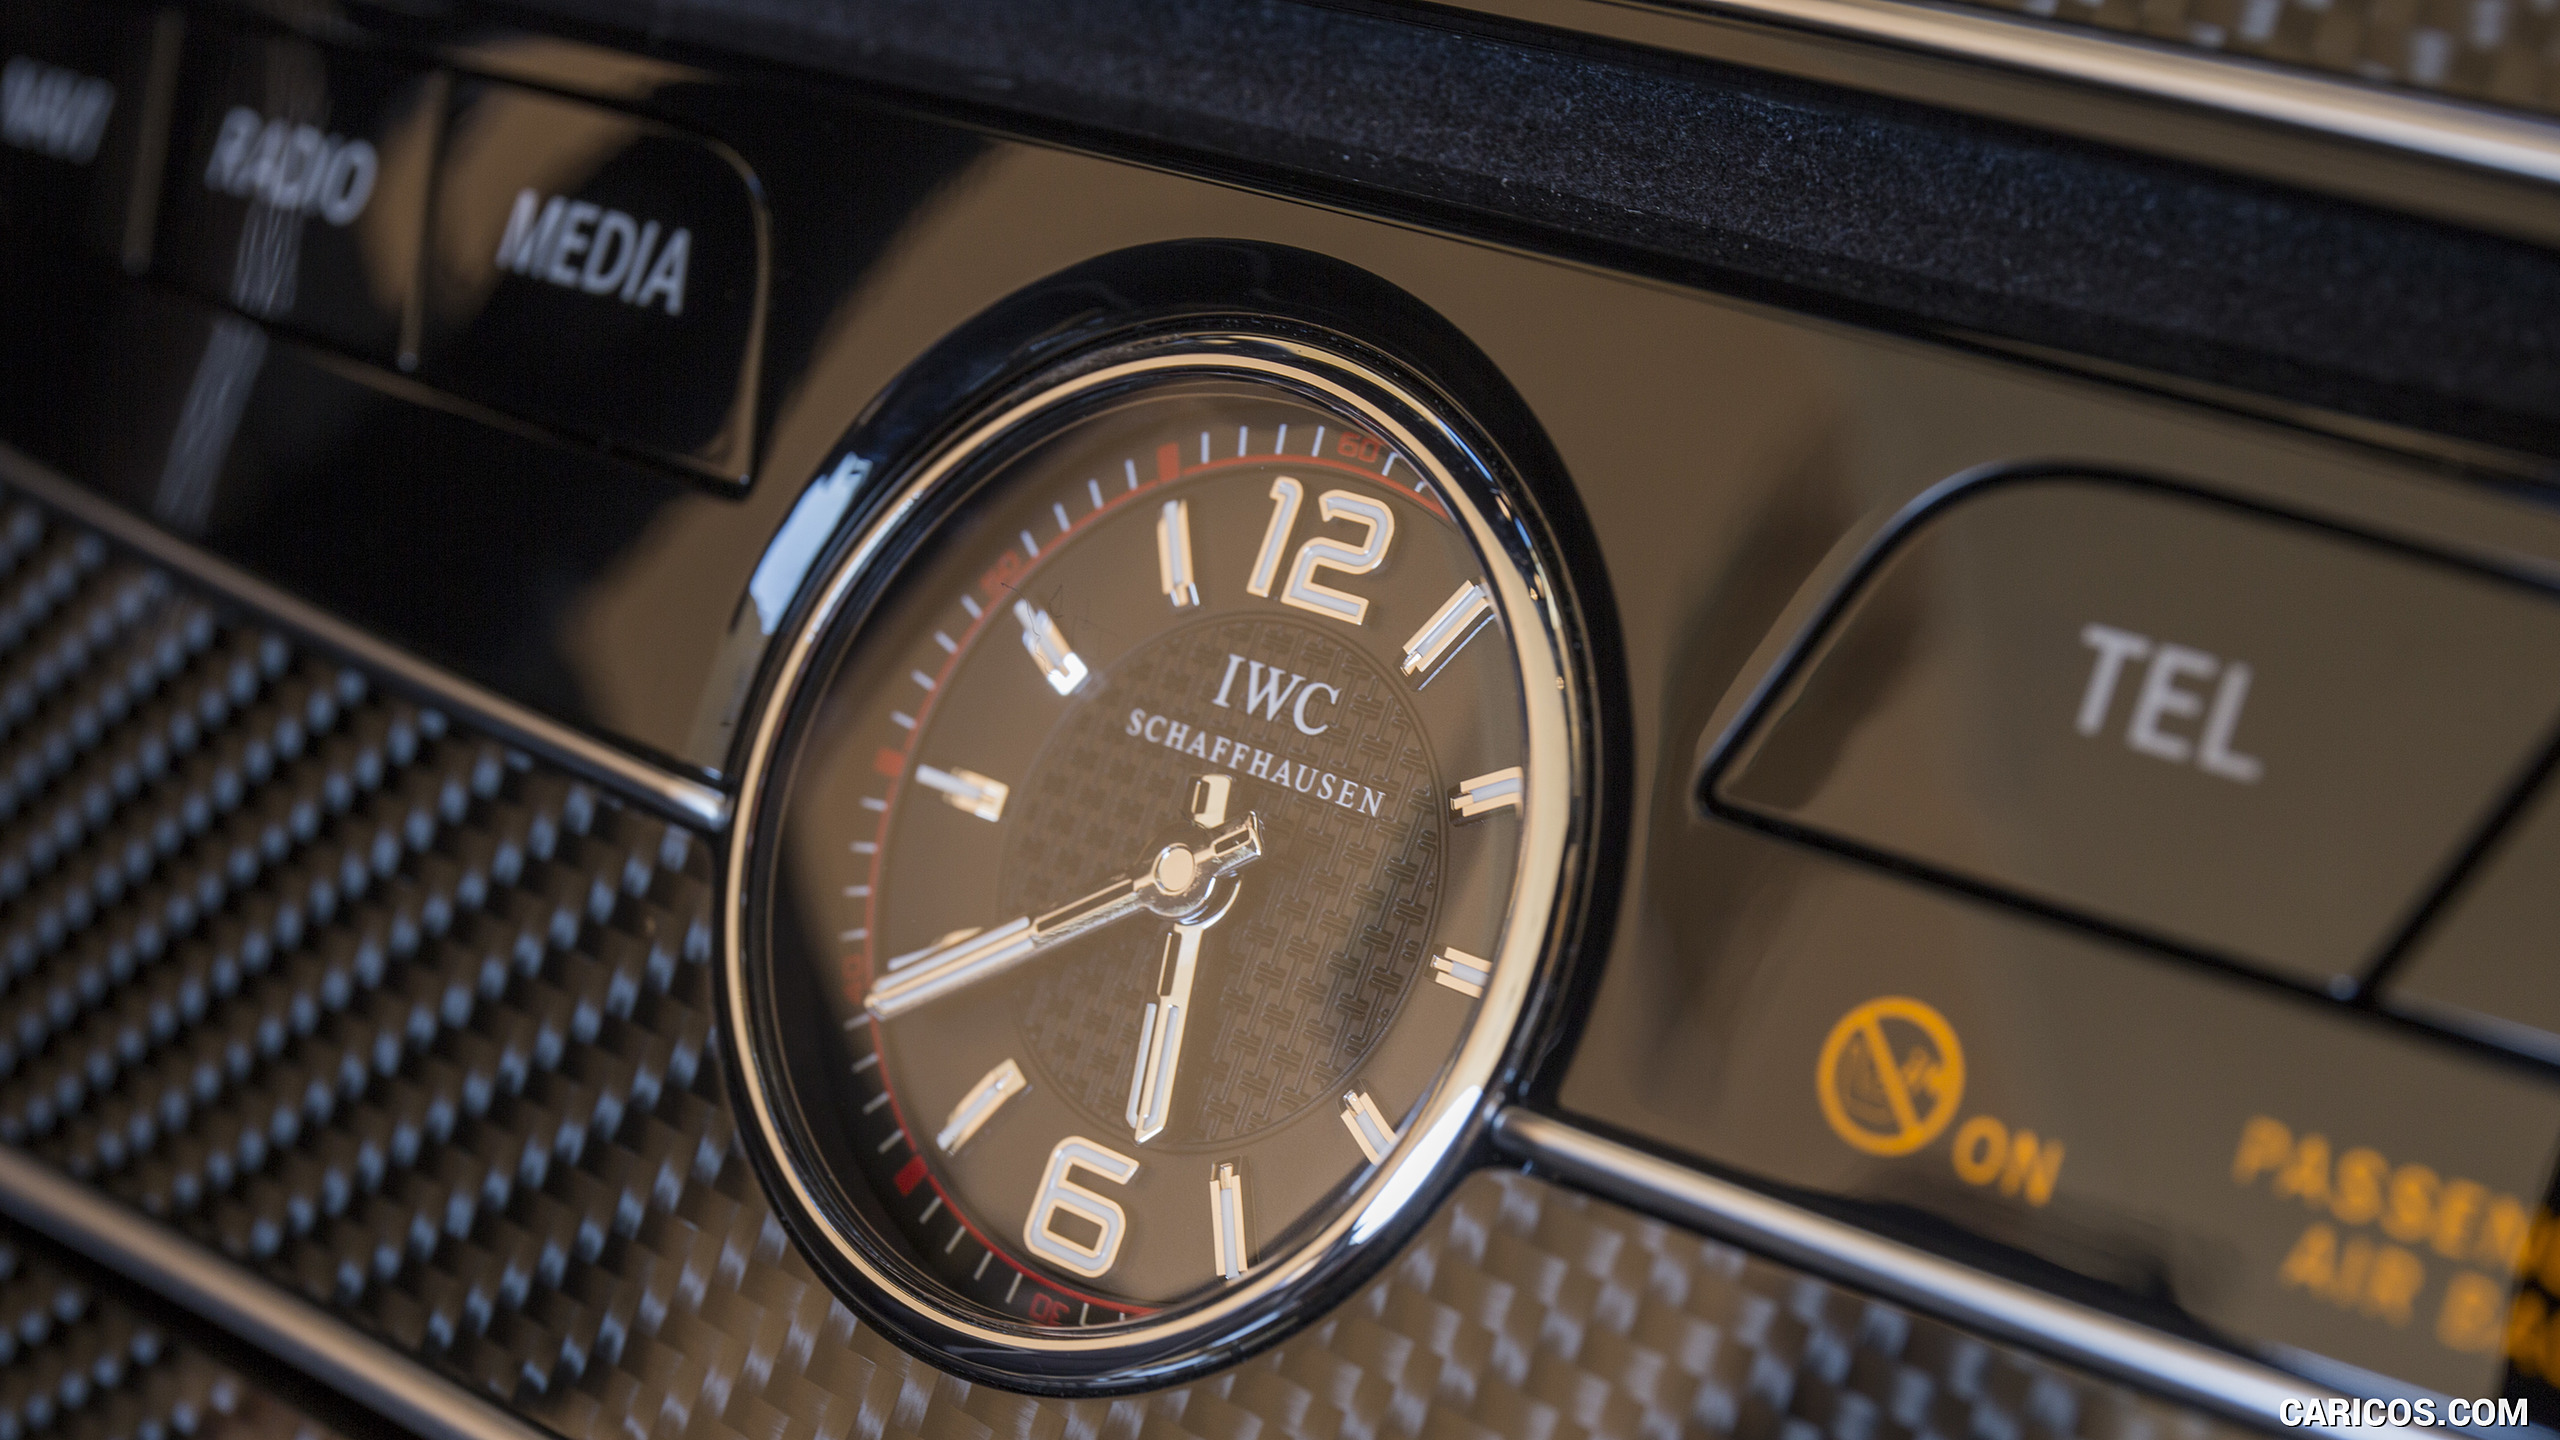 2017 Mercedes-AMG C63 S Cabriolet - Interior, IWC Clock, #80 of 222